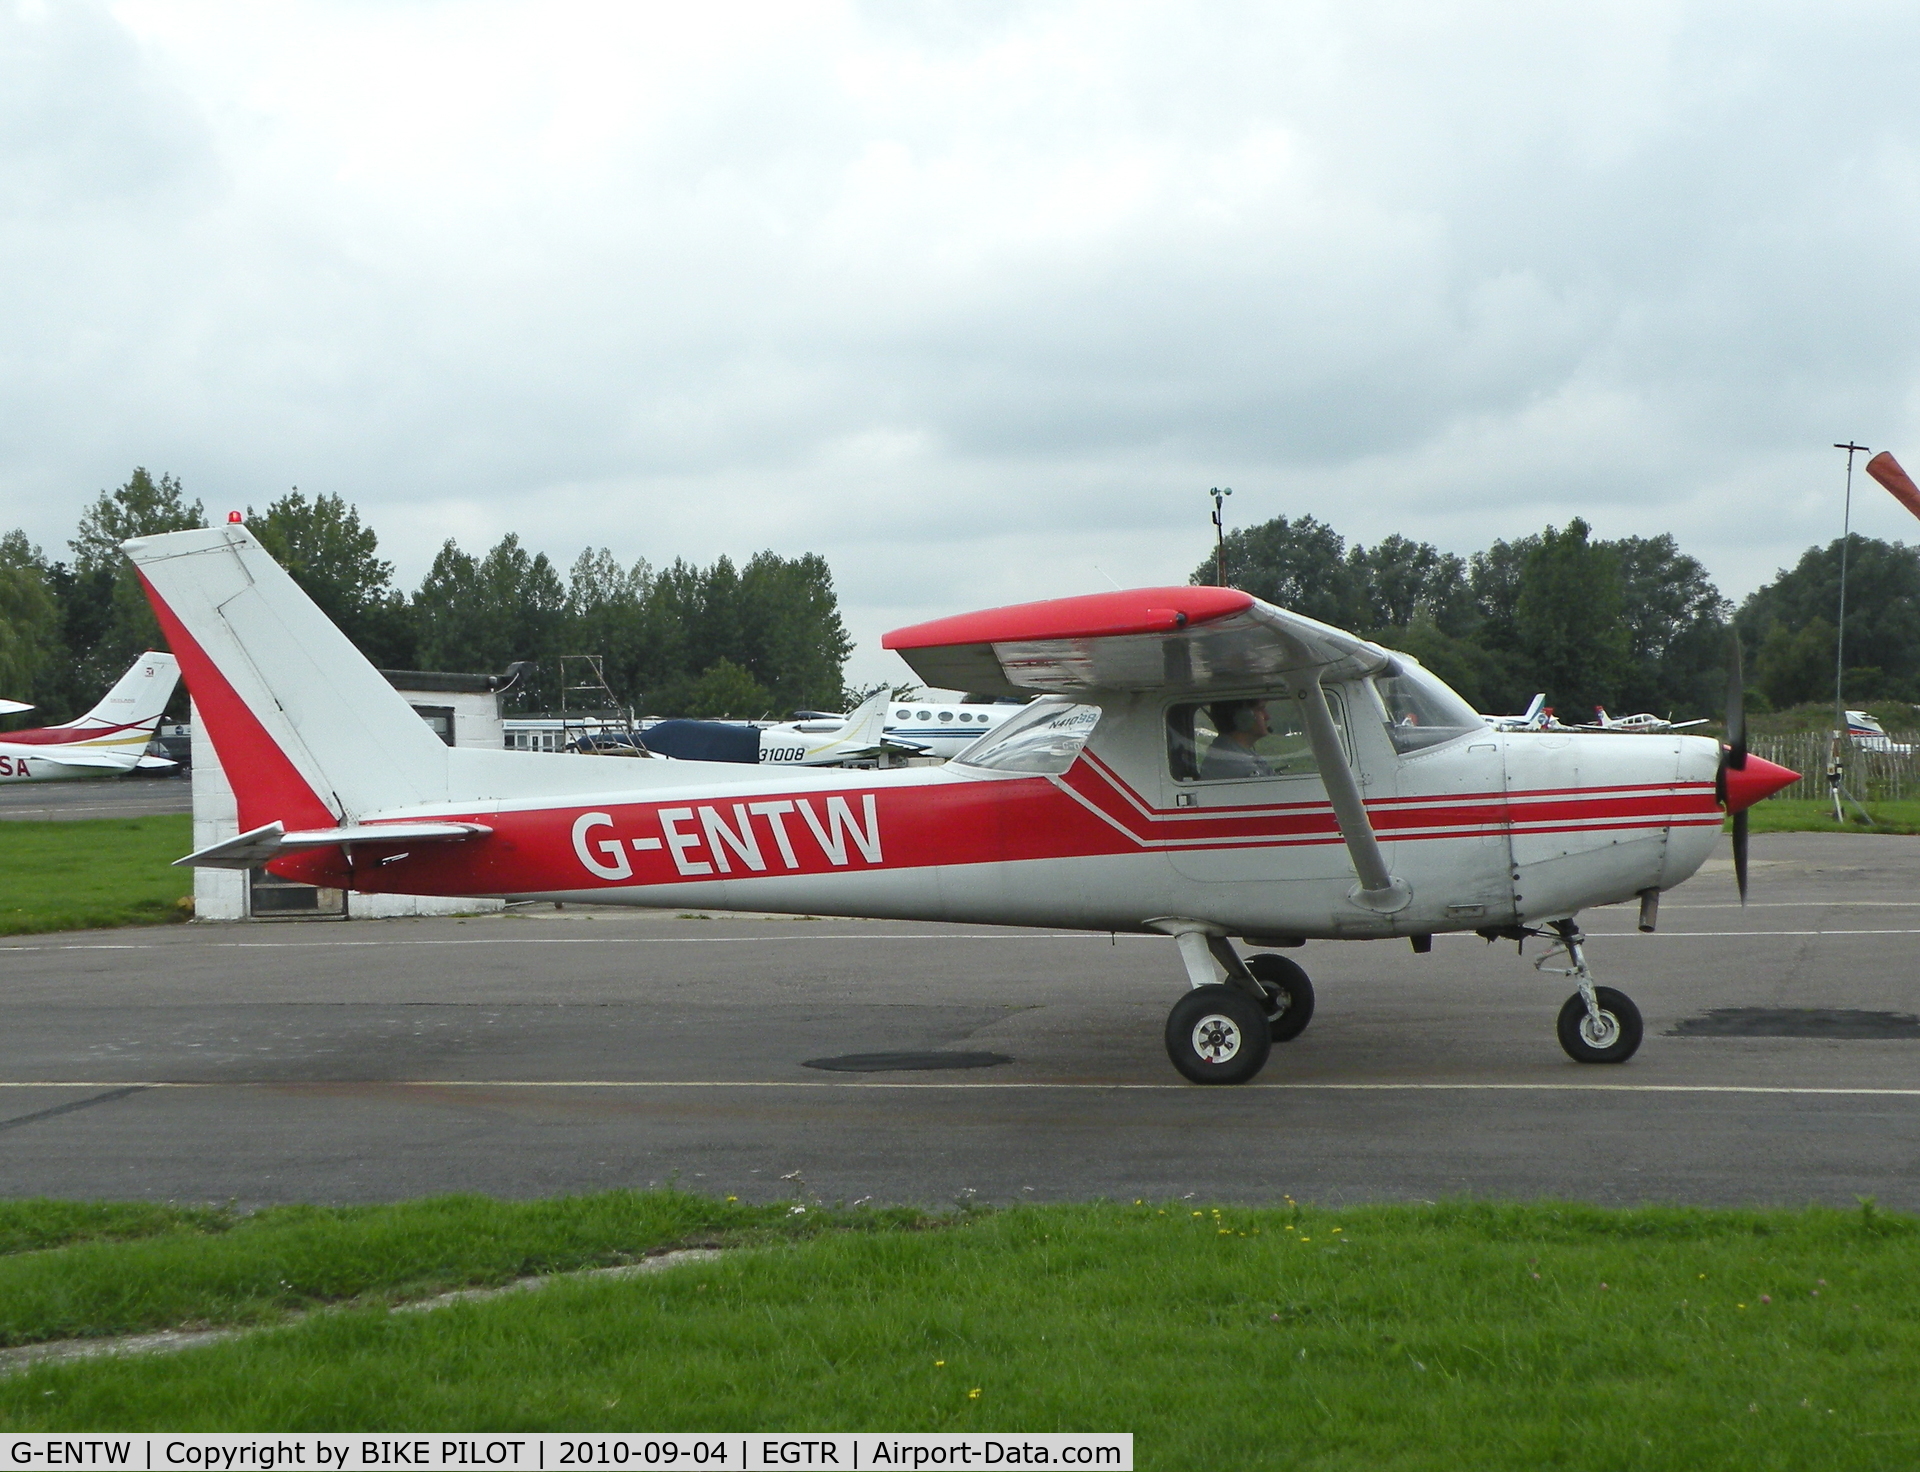 G-ENTW, 1978 Reims F152 C/N 1479, Heading for rwy 08